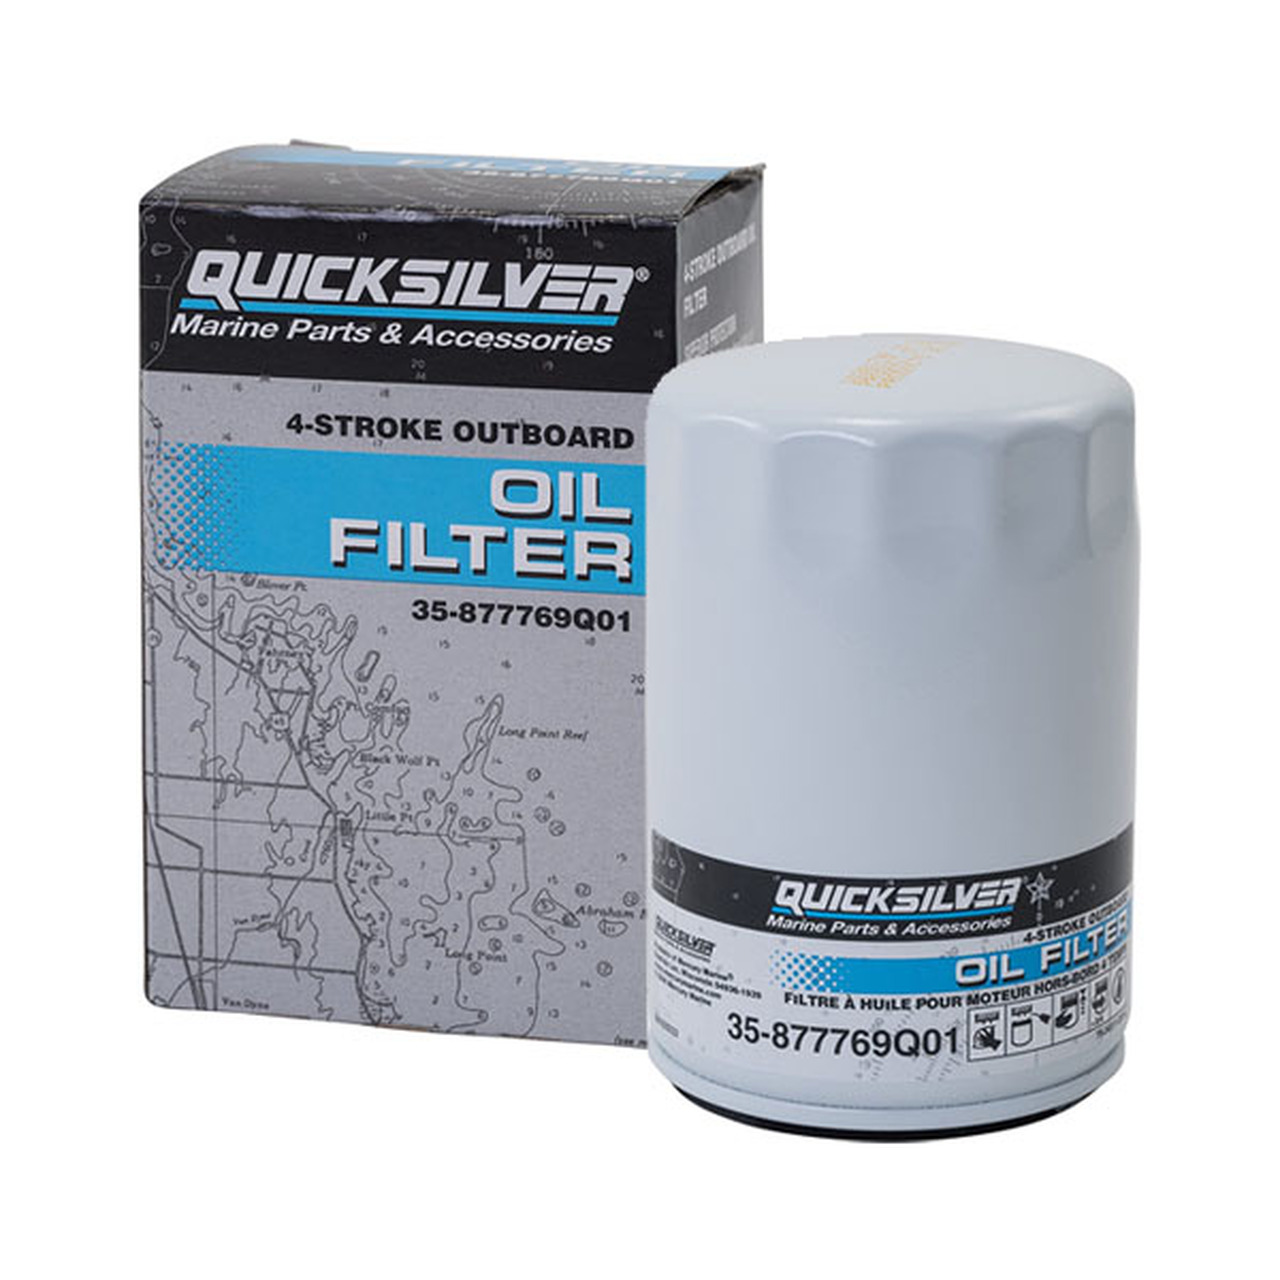 Quicksilver Verado Oil Filter for 6 Cylinder L6 4 Stroke Verado Outboards